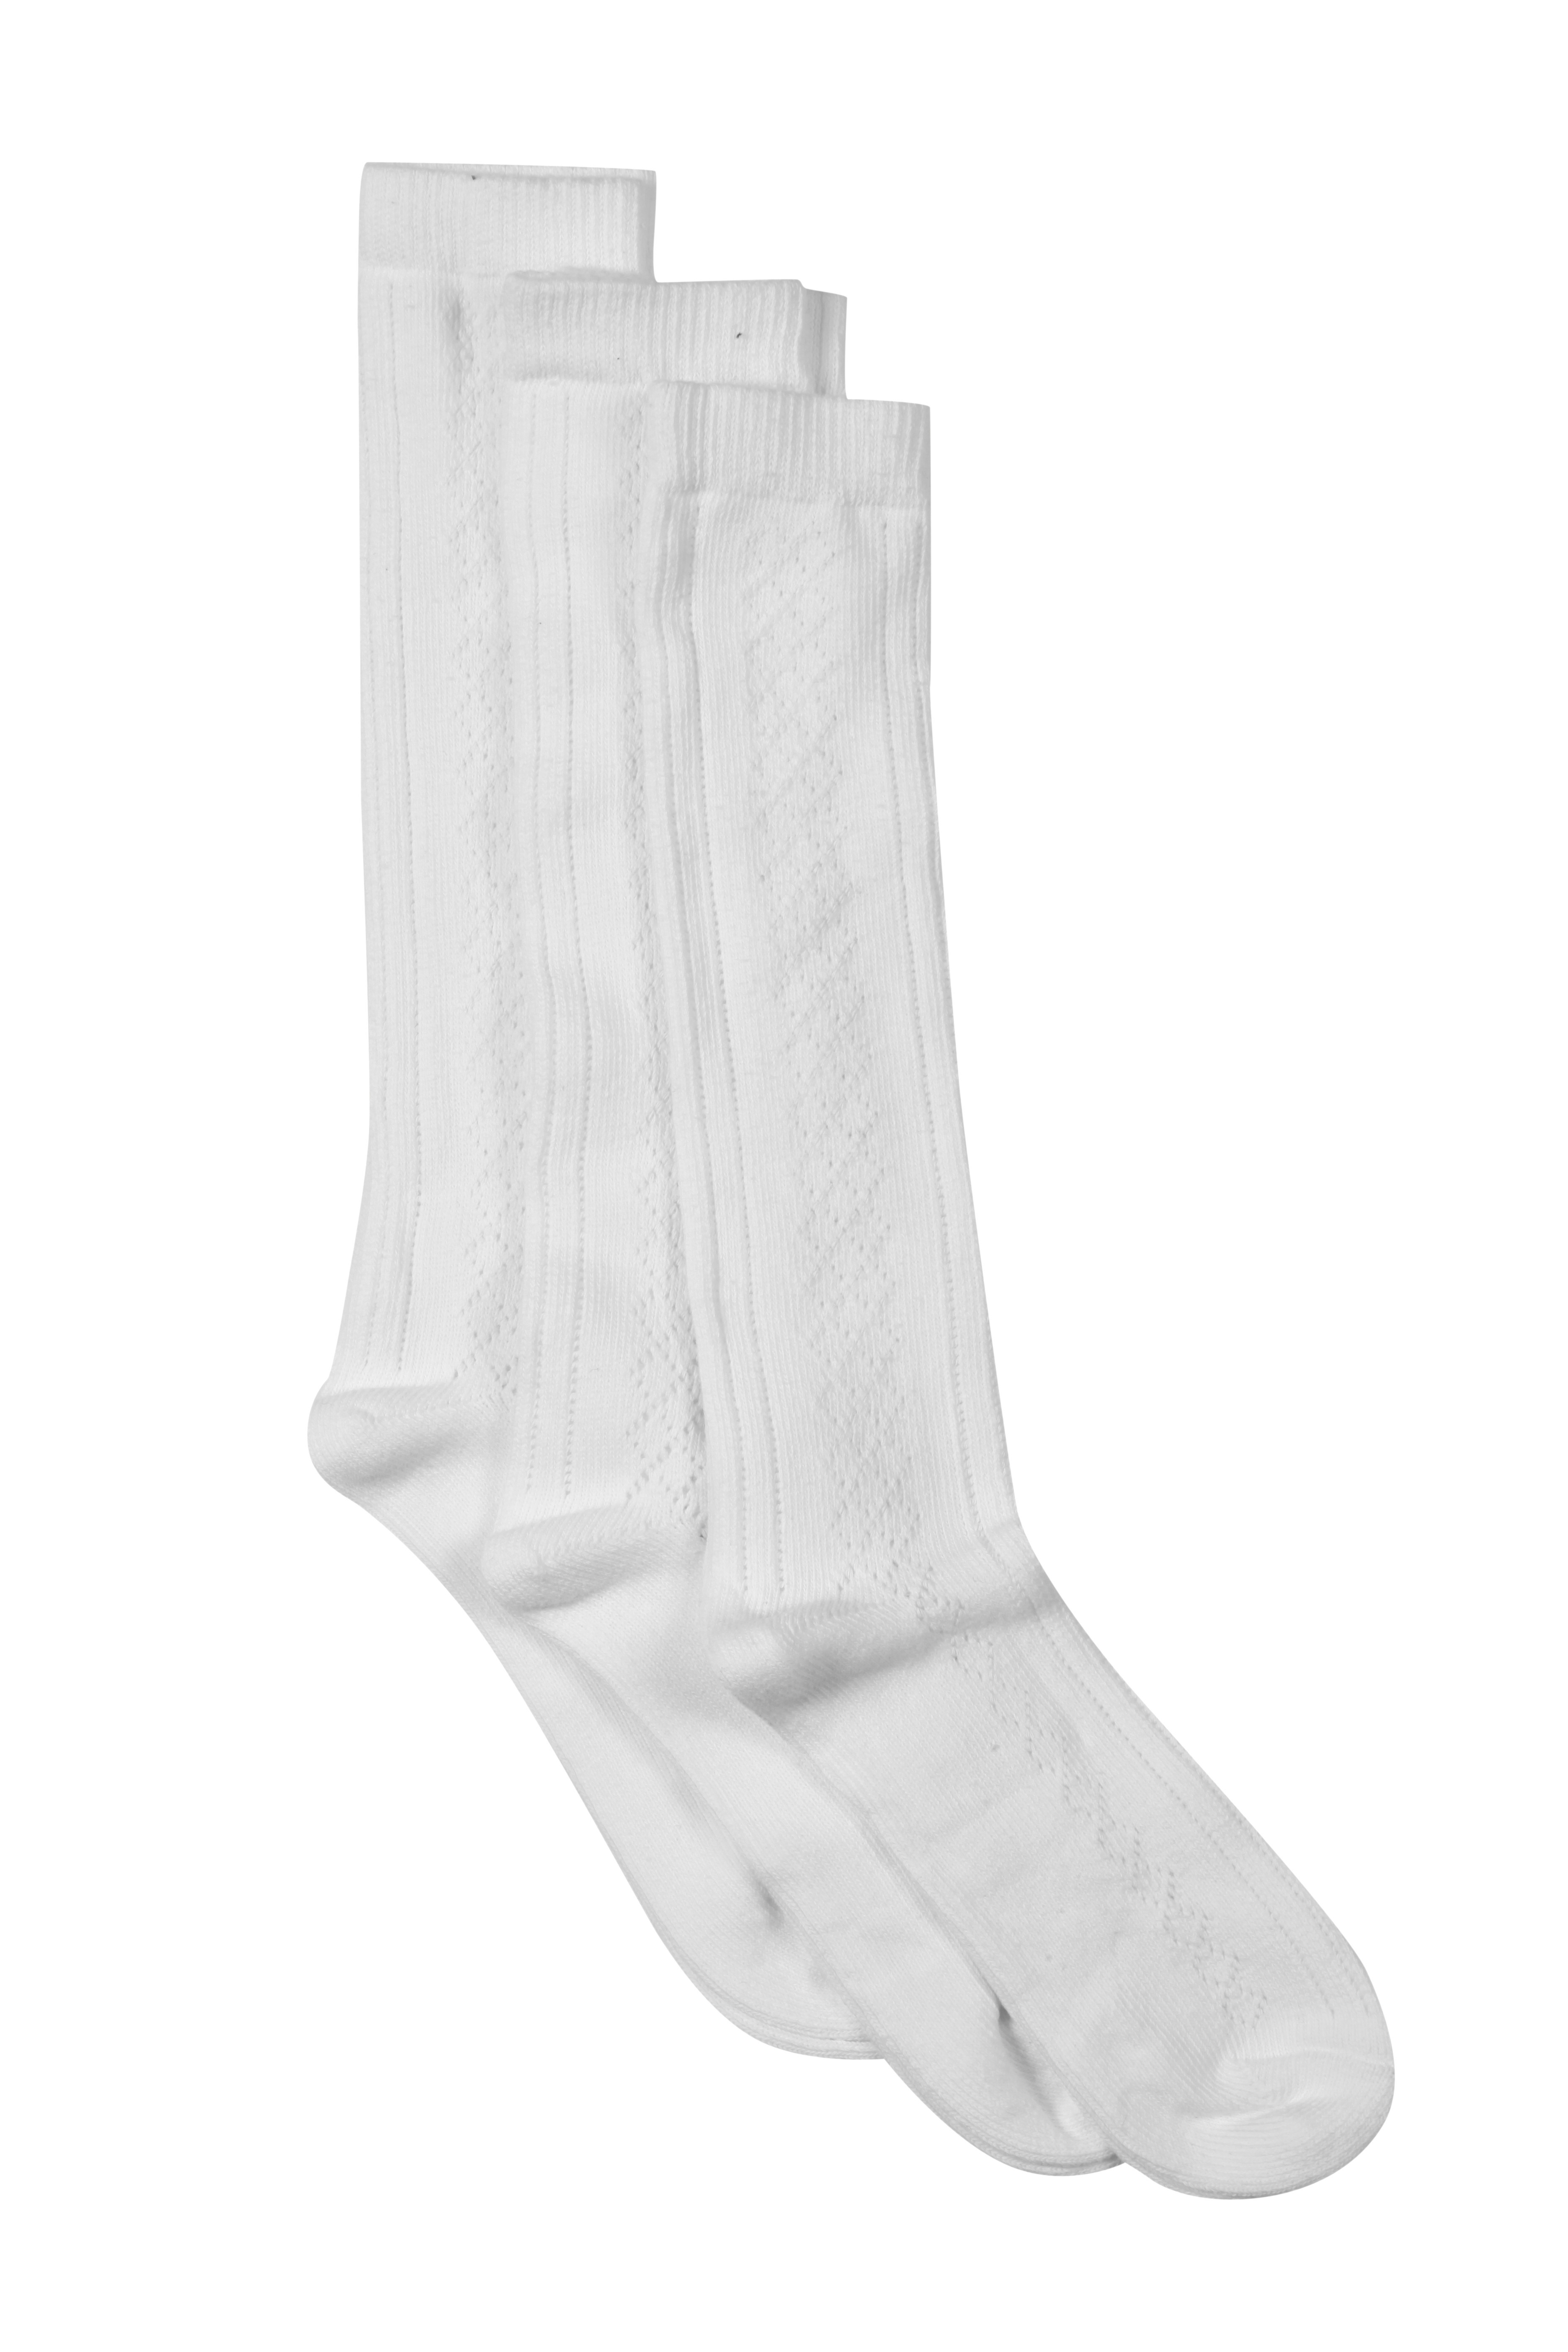 4-5.5, 6 Pack White Girls Knee High Pelerine School Socks 6 Pack White 12.5-3.5